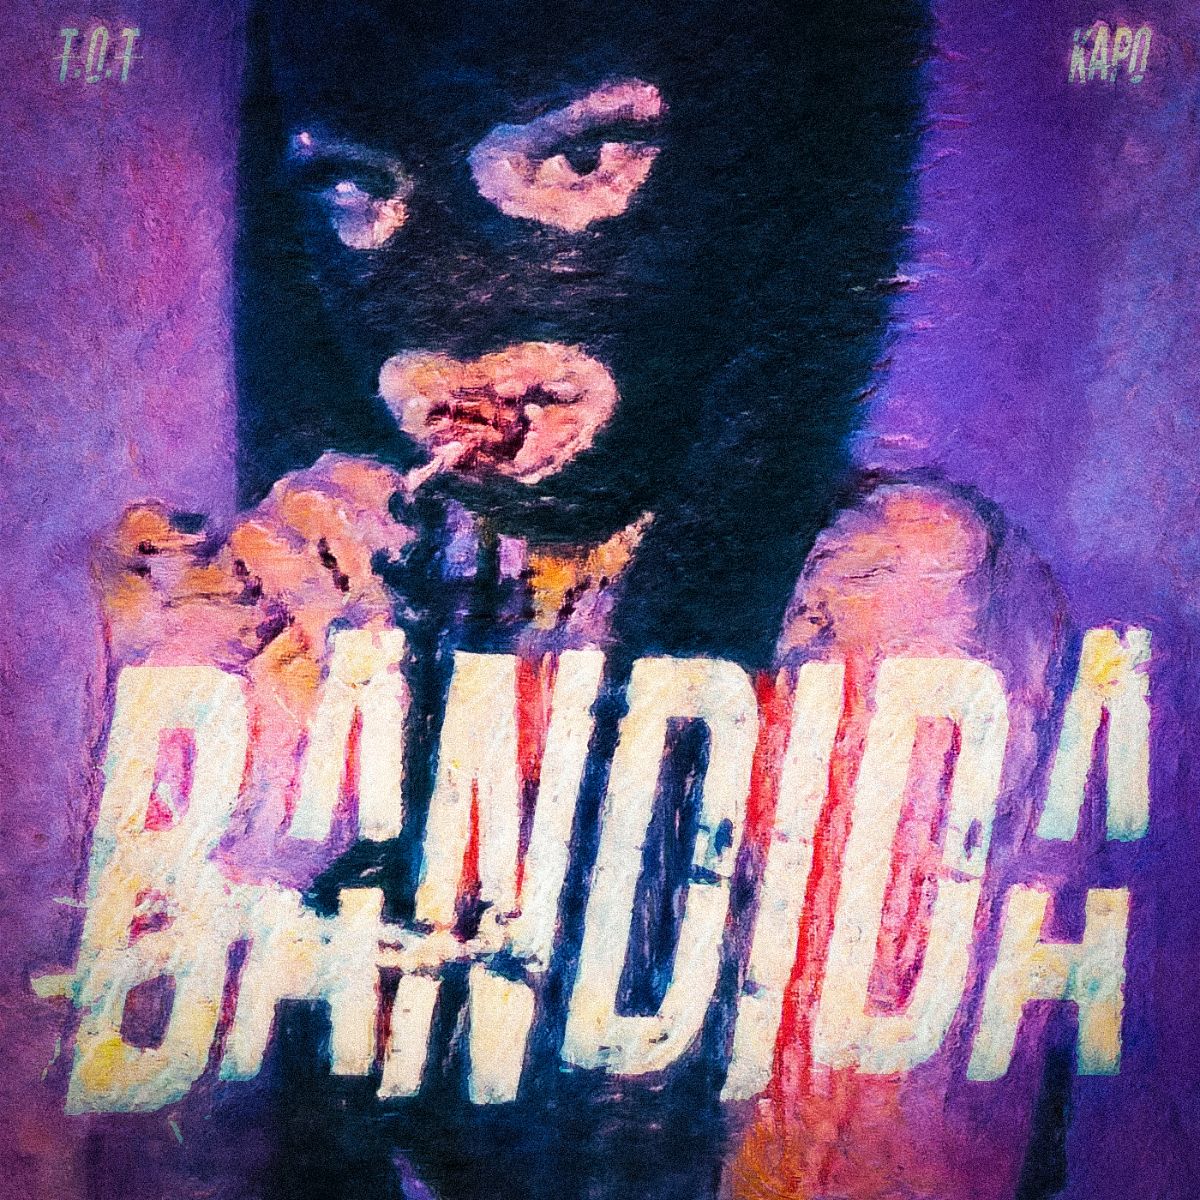 T.O.T se une a KAPO para lanzar nuevo tema “Bandida”